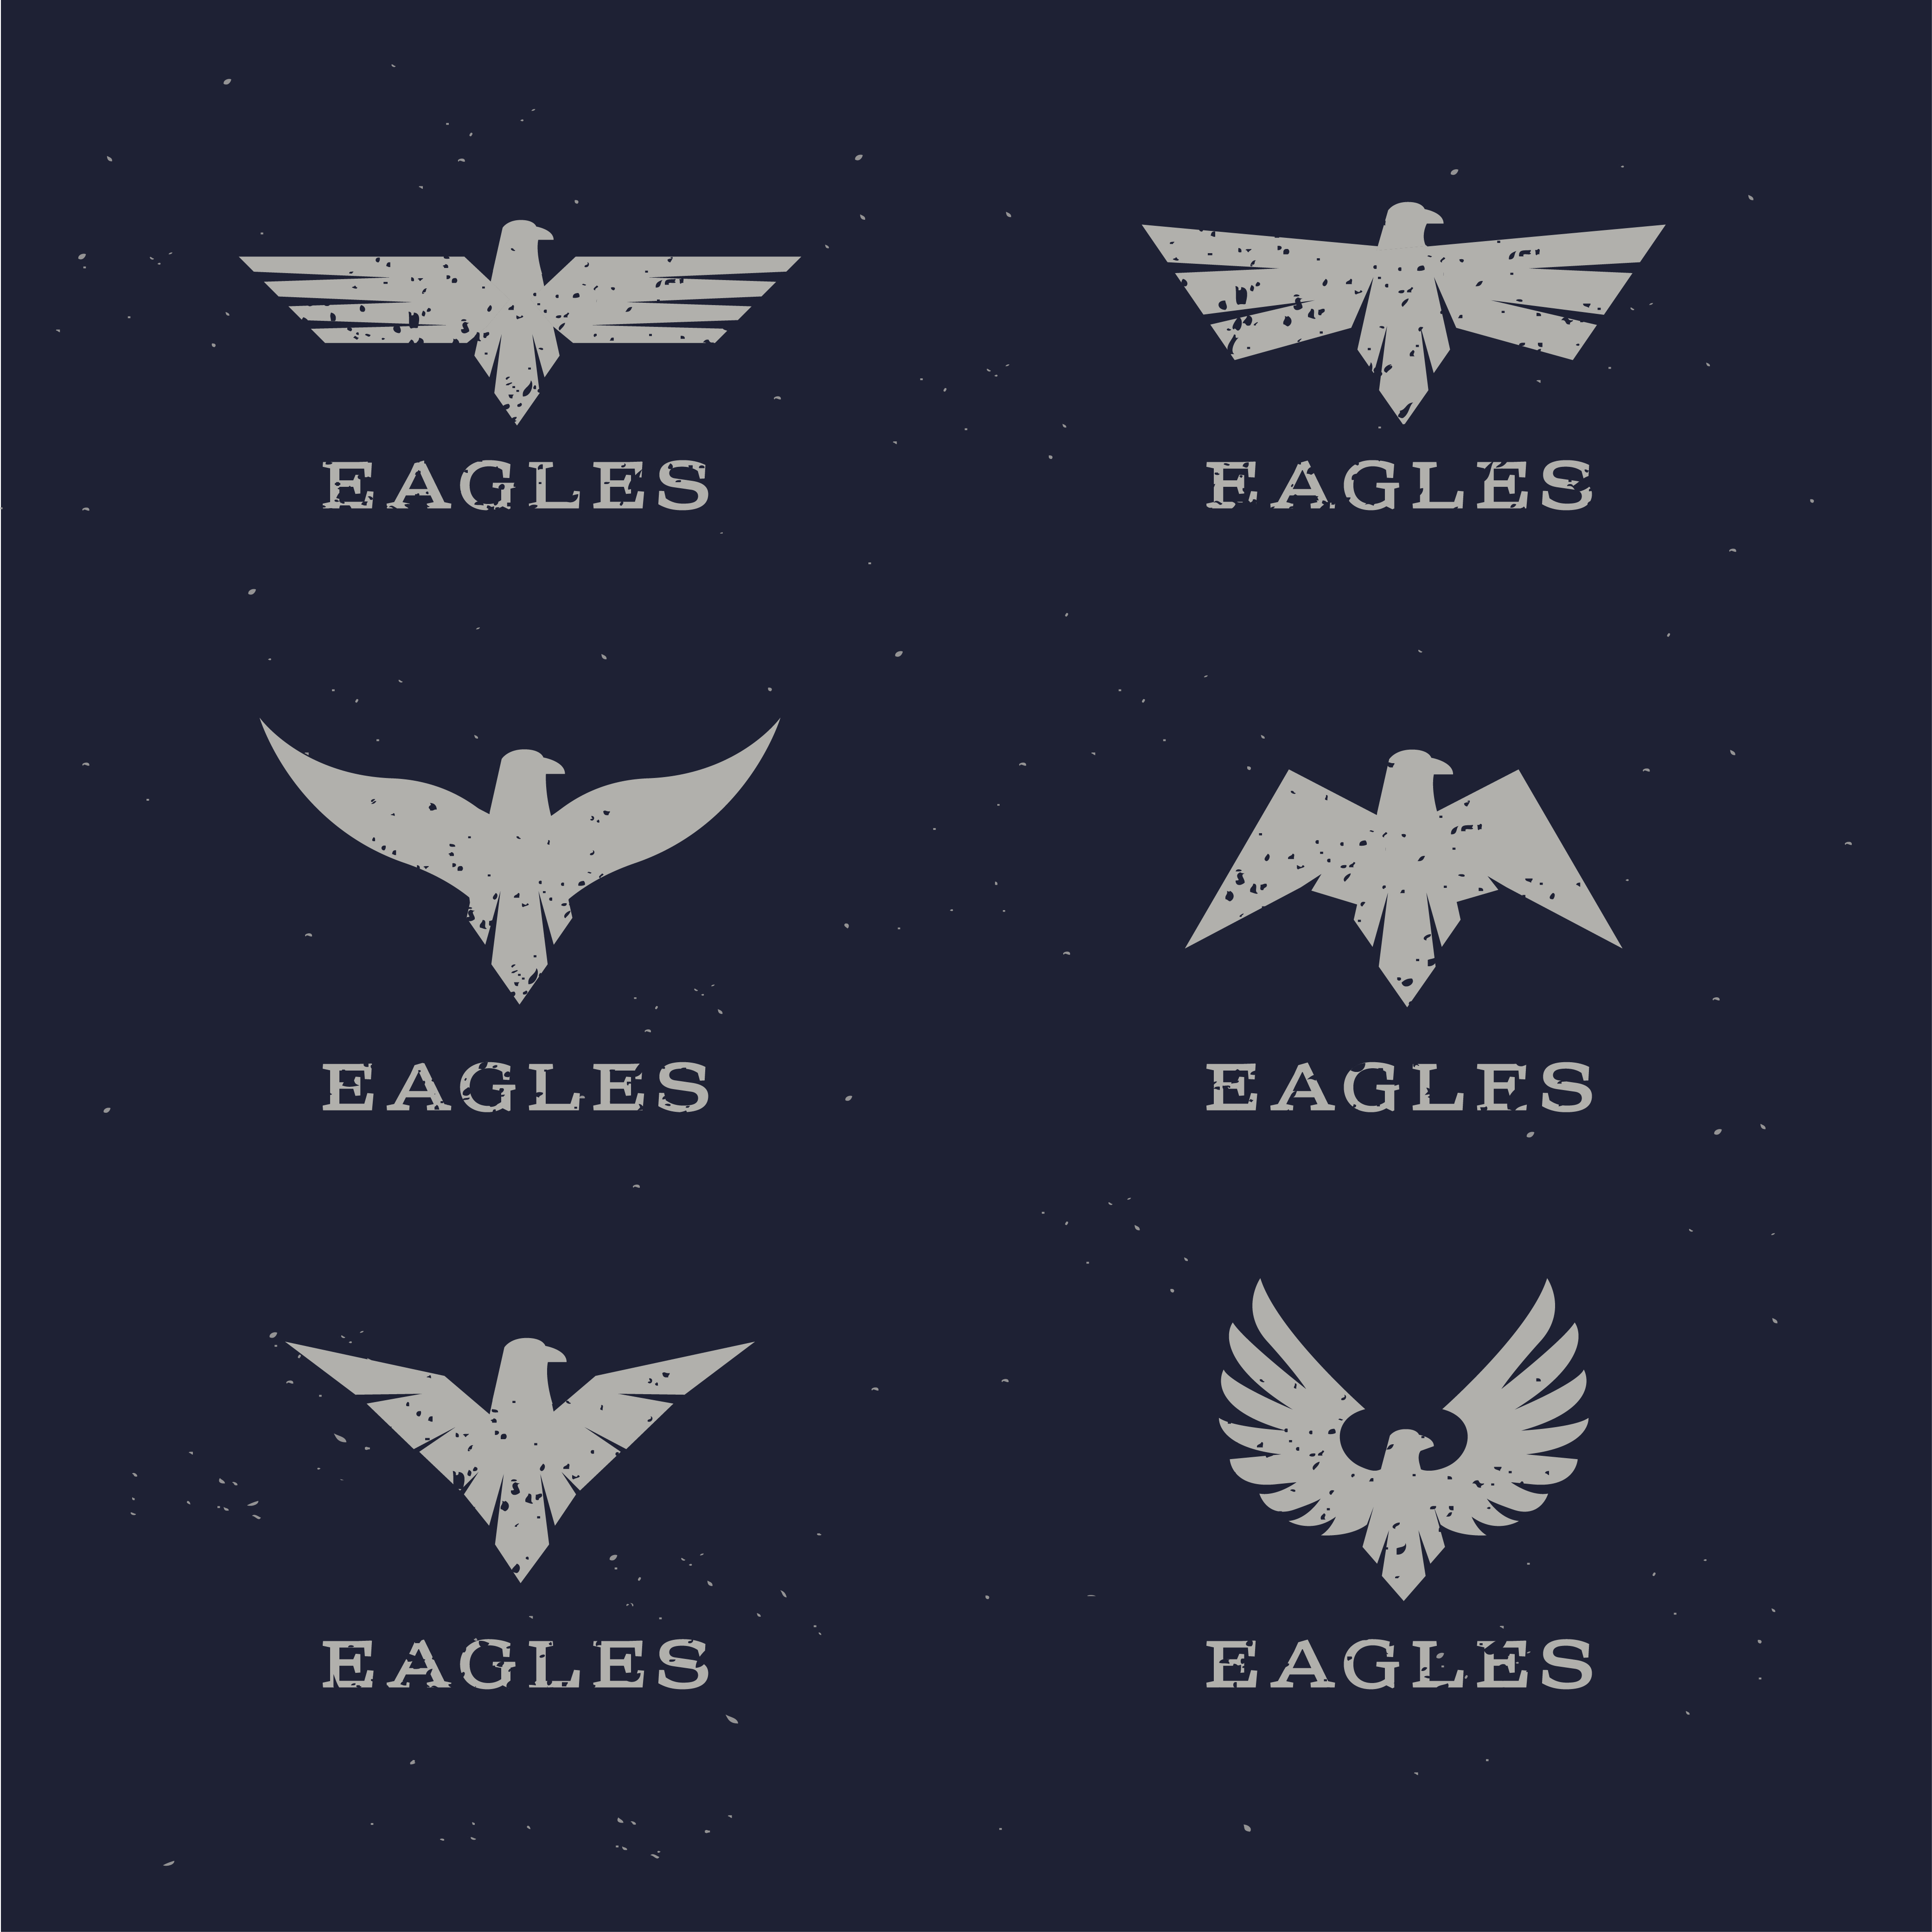 Stylish Eagle Icons Photoshop brush